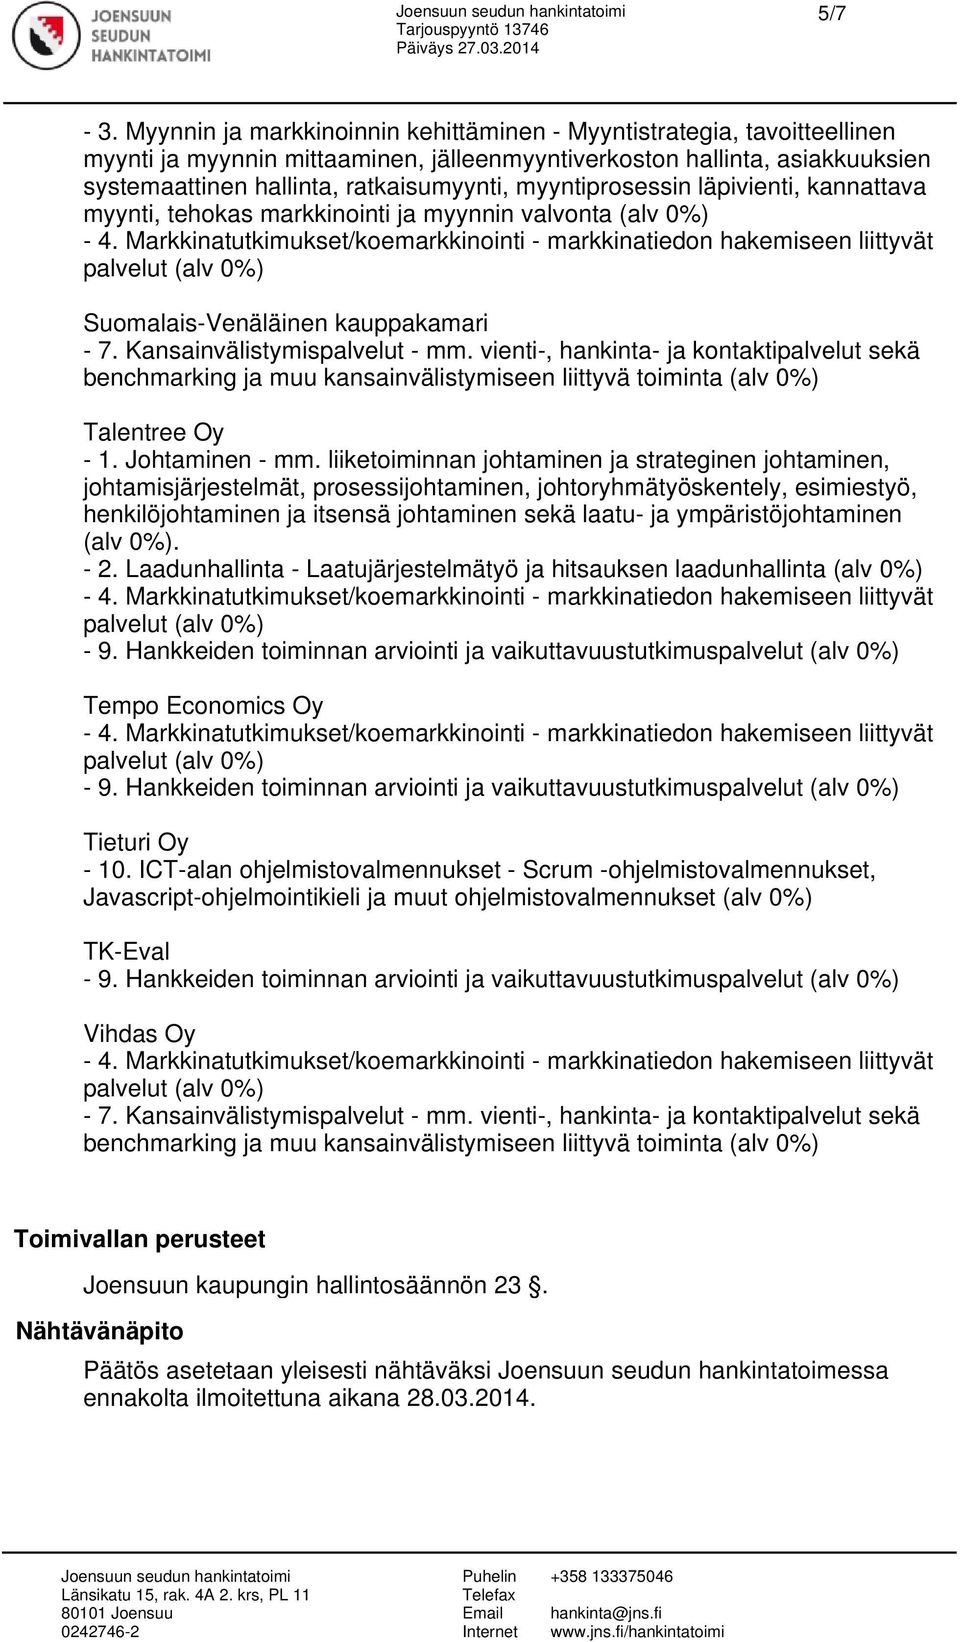 ohjelmistovalmennukset (alv 0%) TK-Eval Vihdas Oy Toimivallan perusteet Joensuun kaupungin hallintosäännön